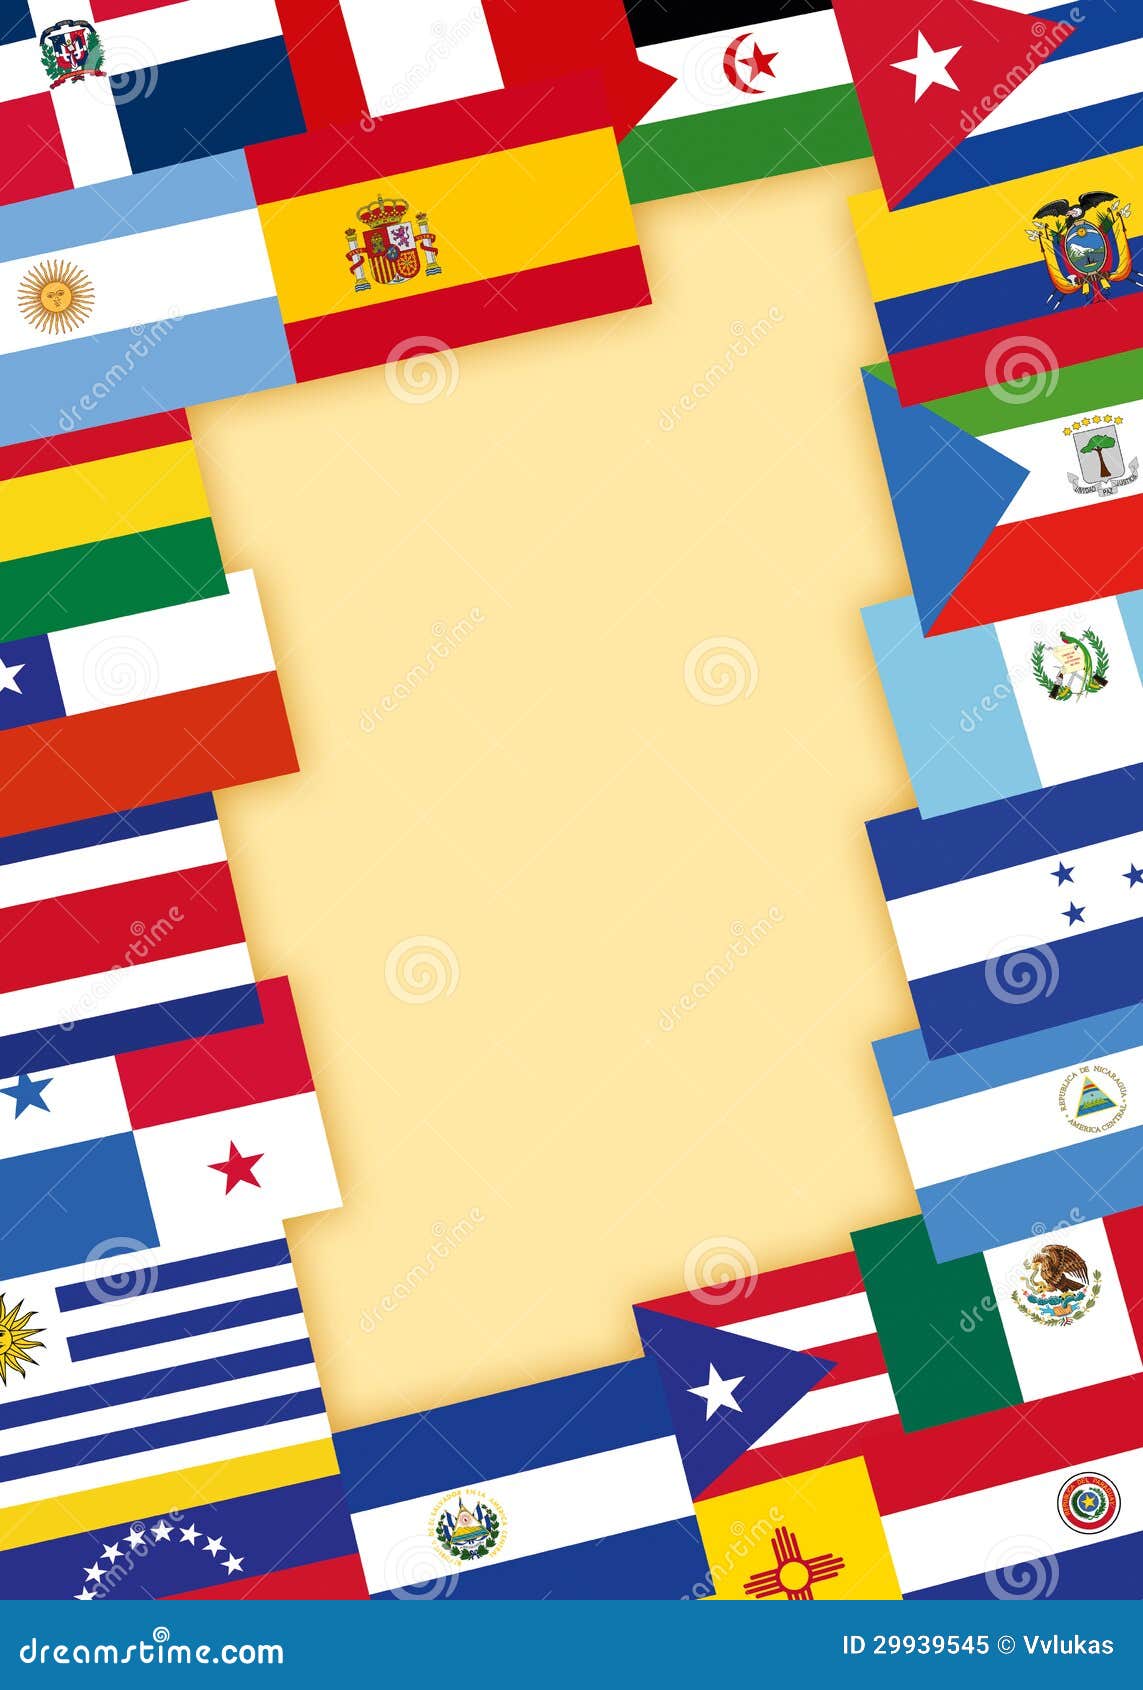 drapeau des pays qui parle espagnol